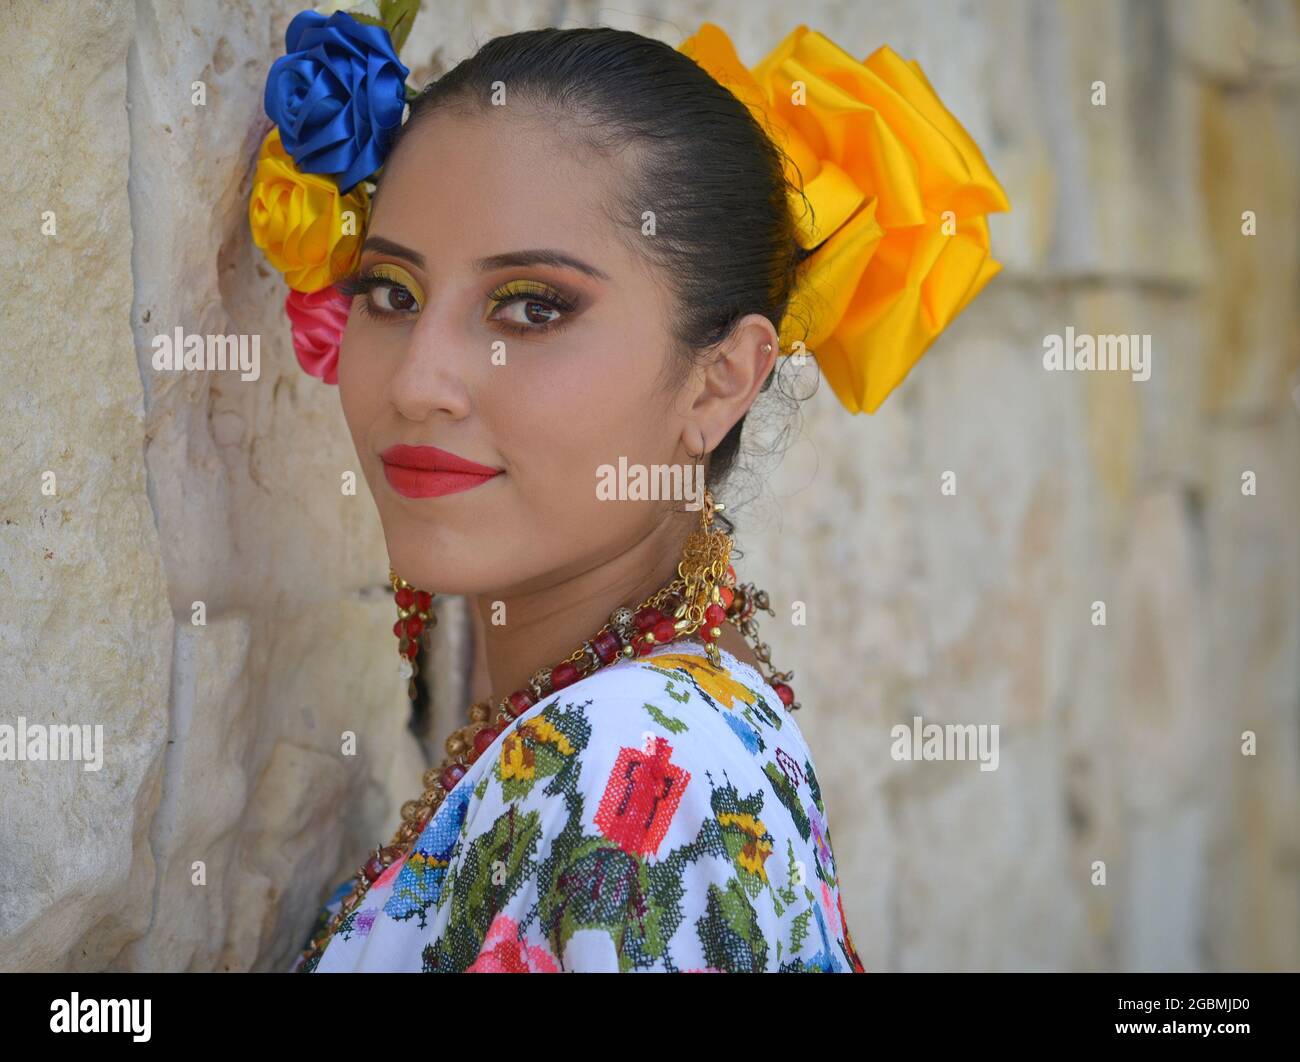 Die junge schöne mexikanische Yucatecan-Volkstänzerin trägt ein traditionelles folkloristisches Kleid mit bunten Blumen im Haar und blickt über ihre Schulter. Stockfoto